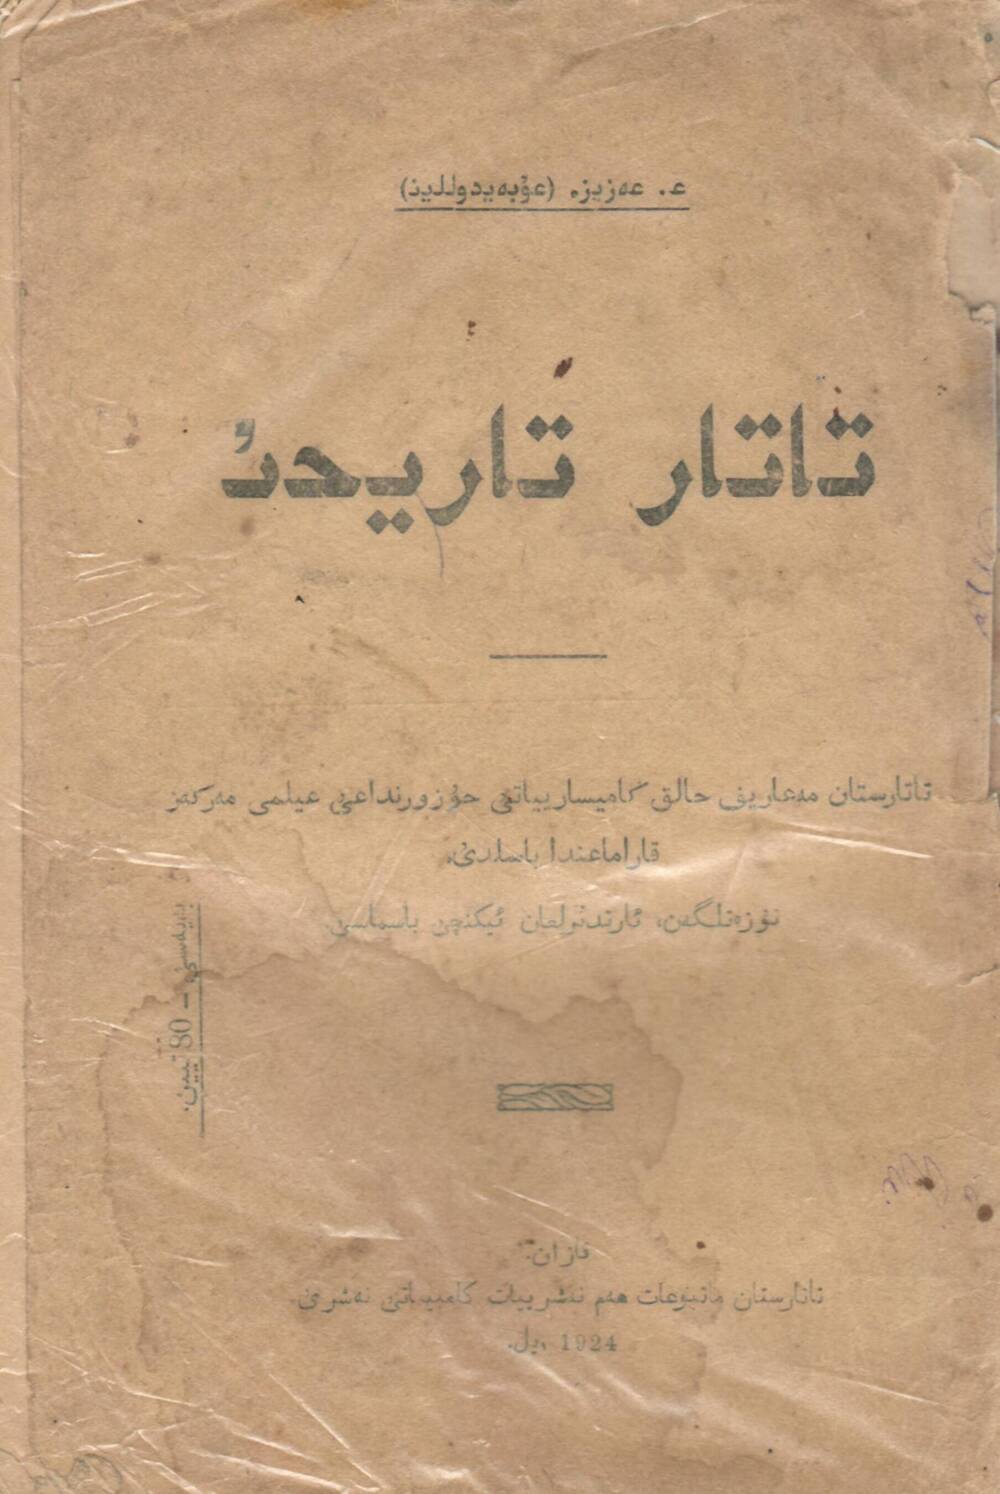 Книга на арабском языке.